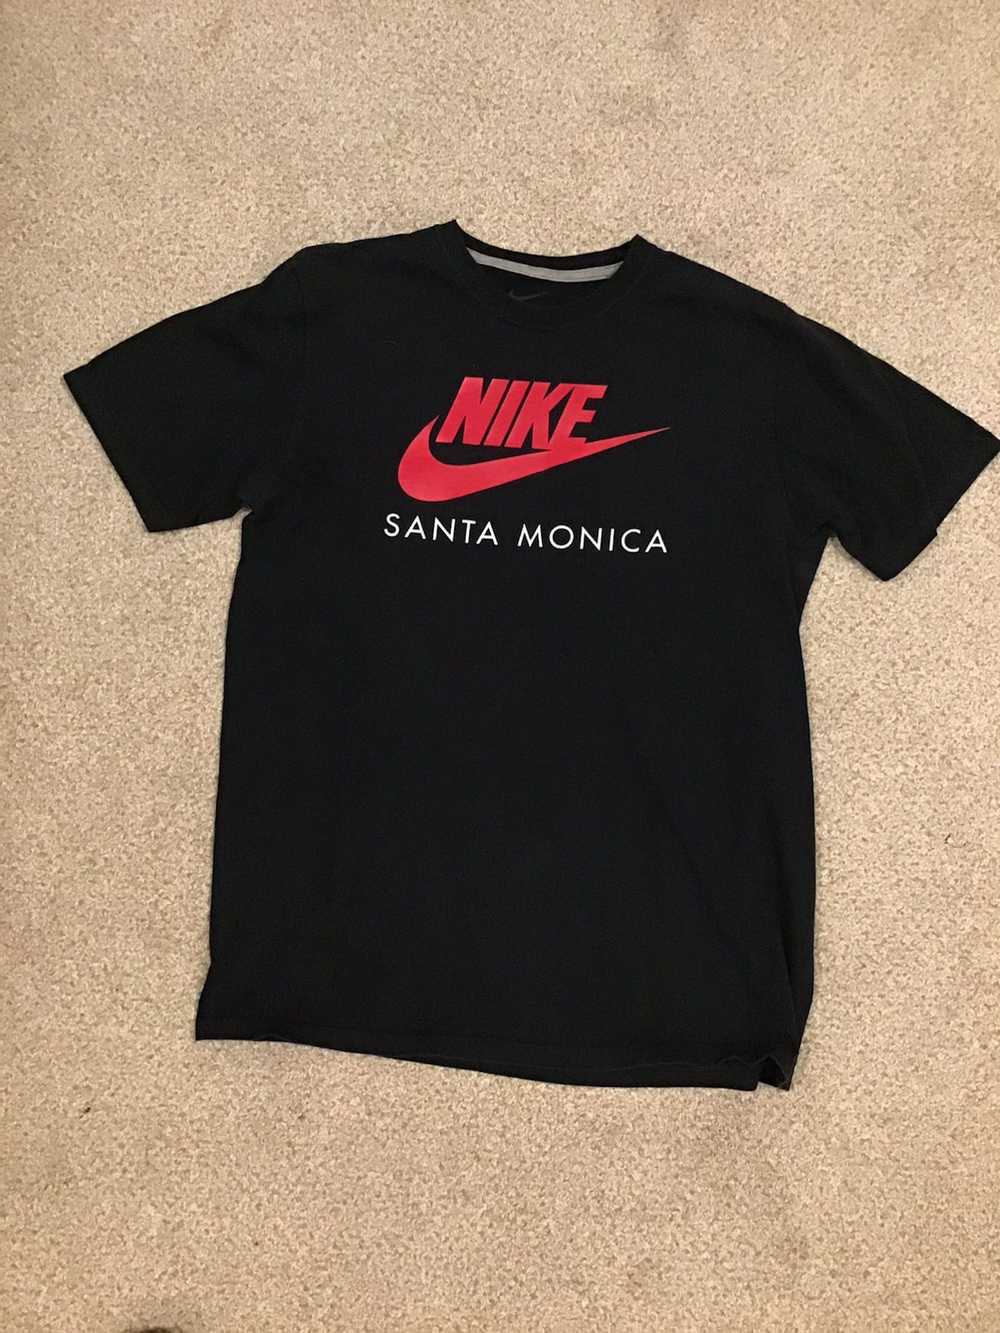 Nike Nike Santa Monica Short Sleeve T shirt Mens … - image 4